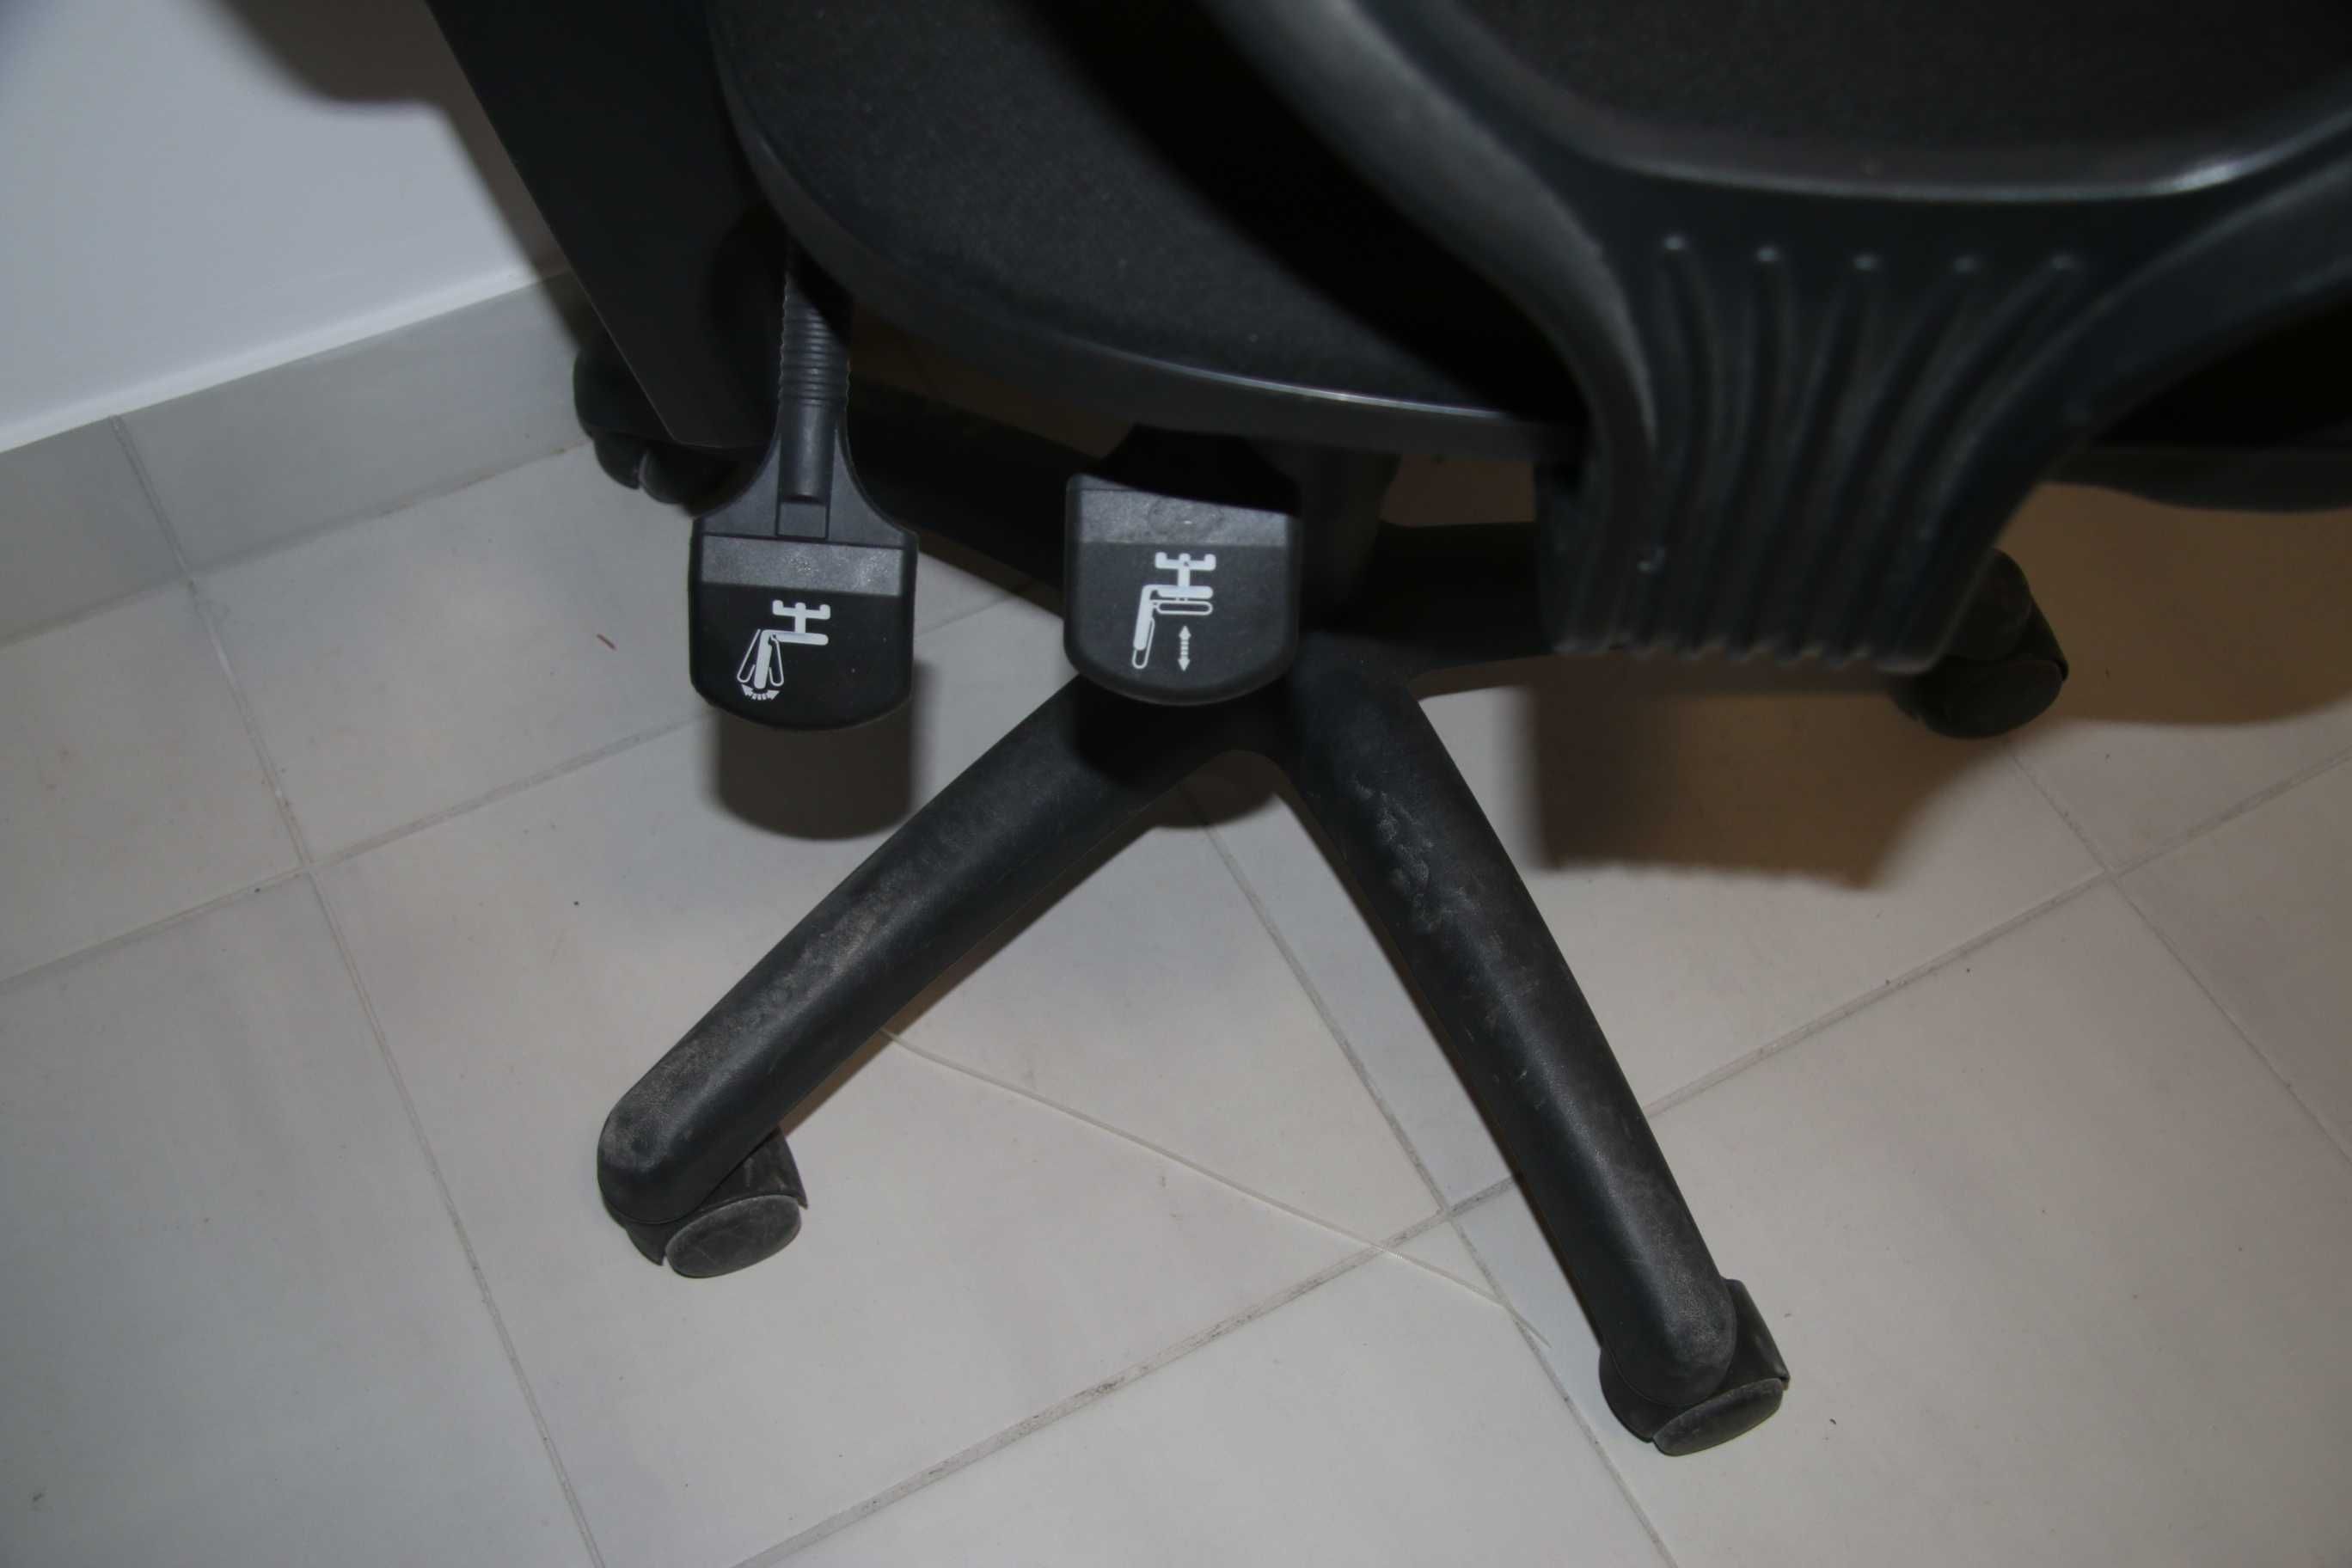 Krzesło, fotelik biurowy